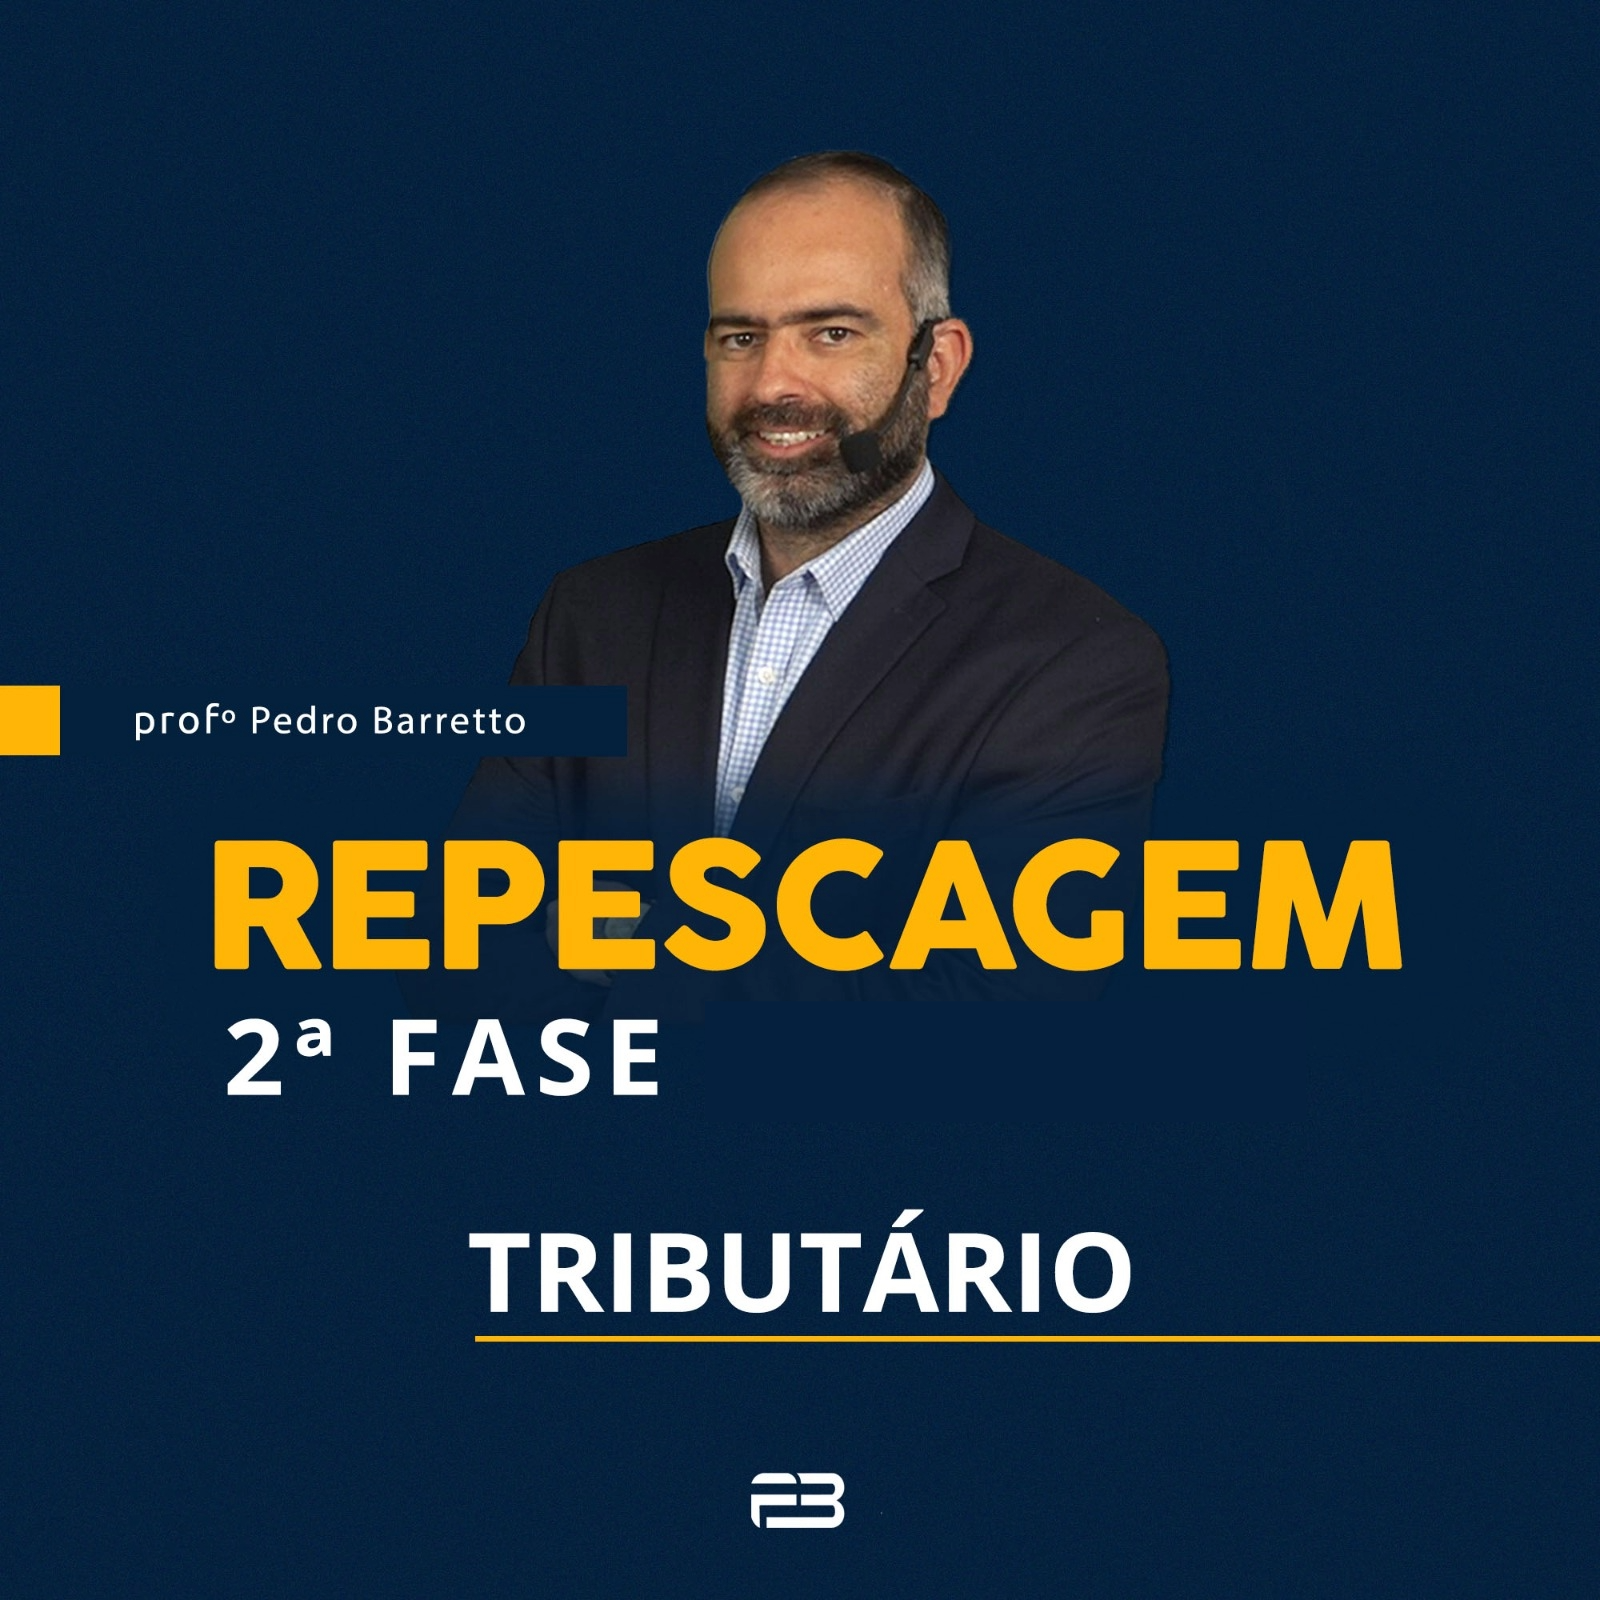 2 FASE REPESCAGEM TRIBUTRIO - 40 EXAME ONLINE